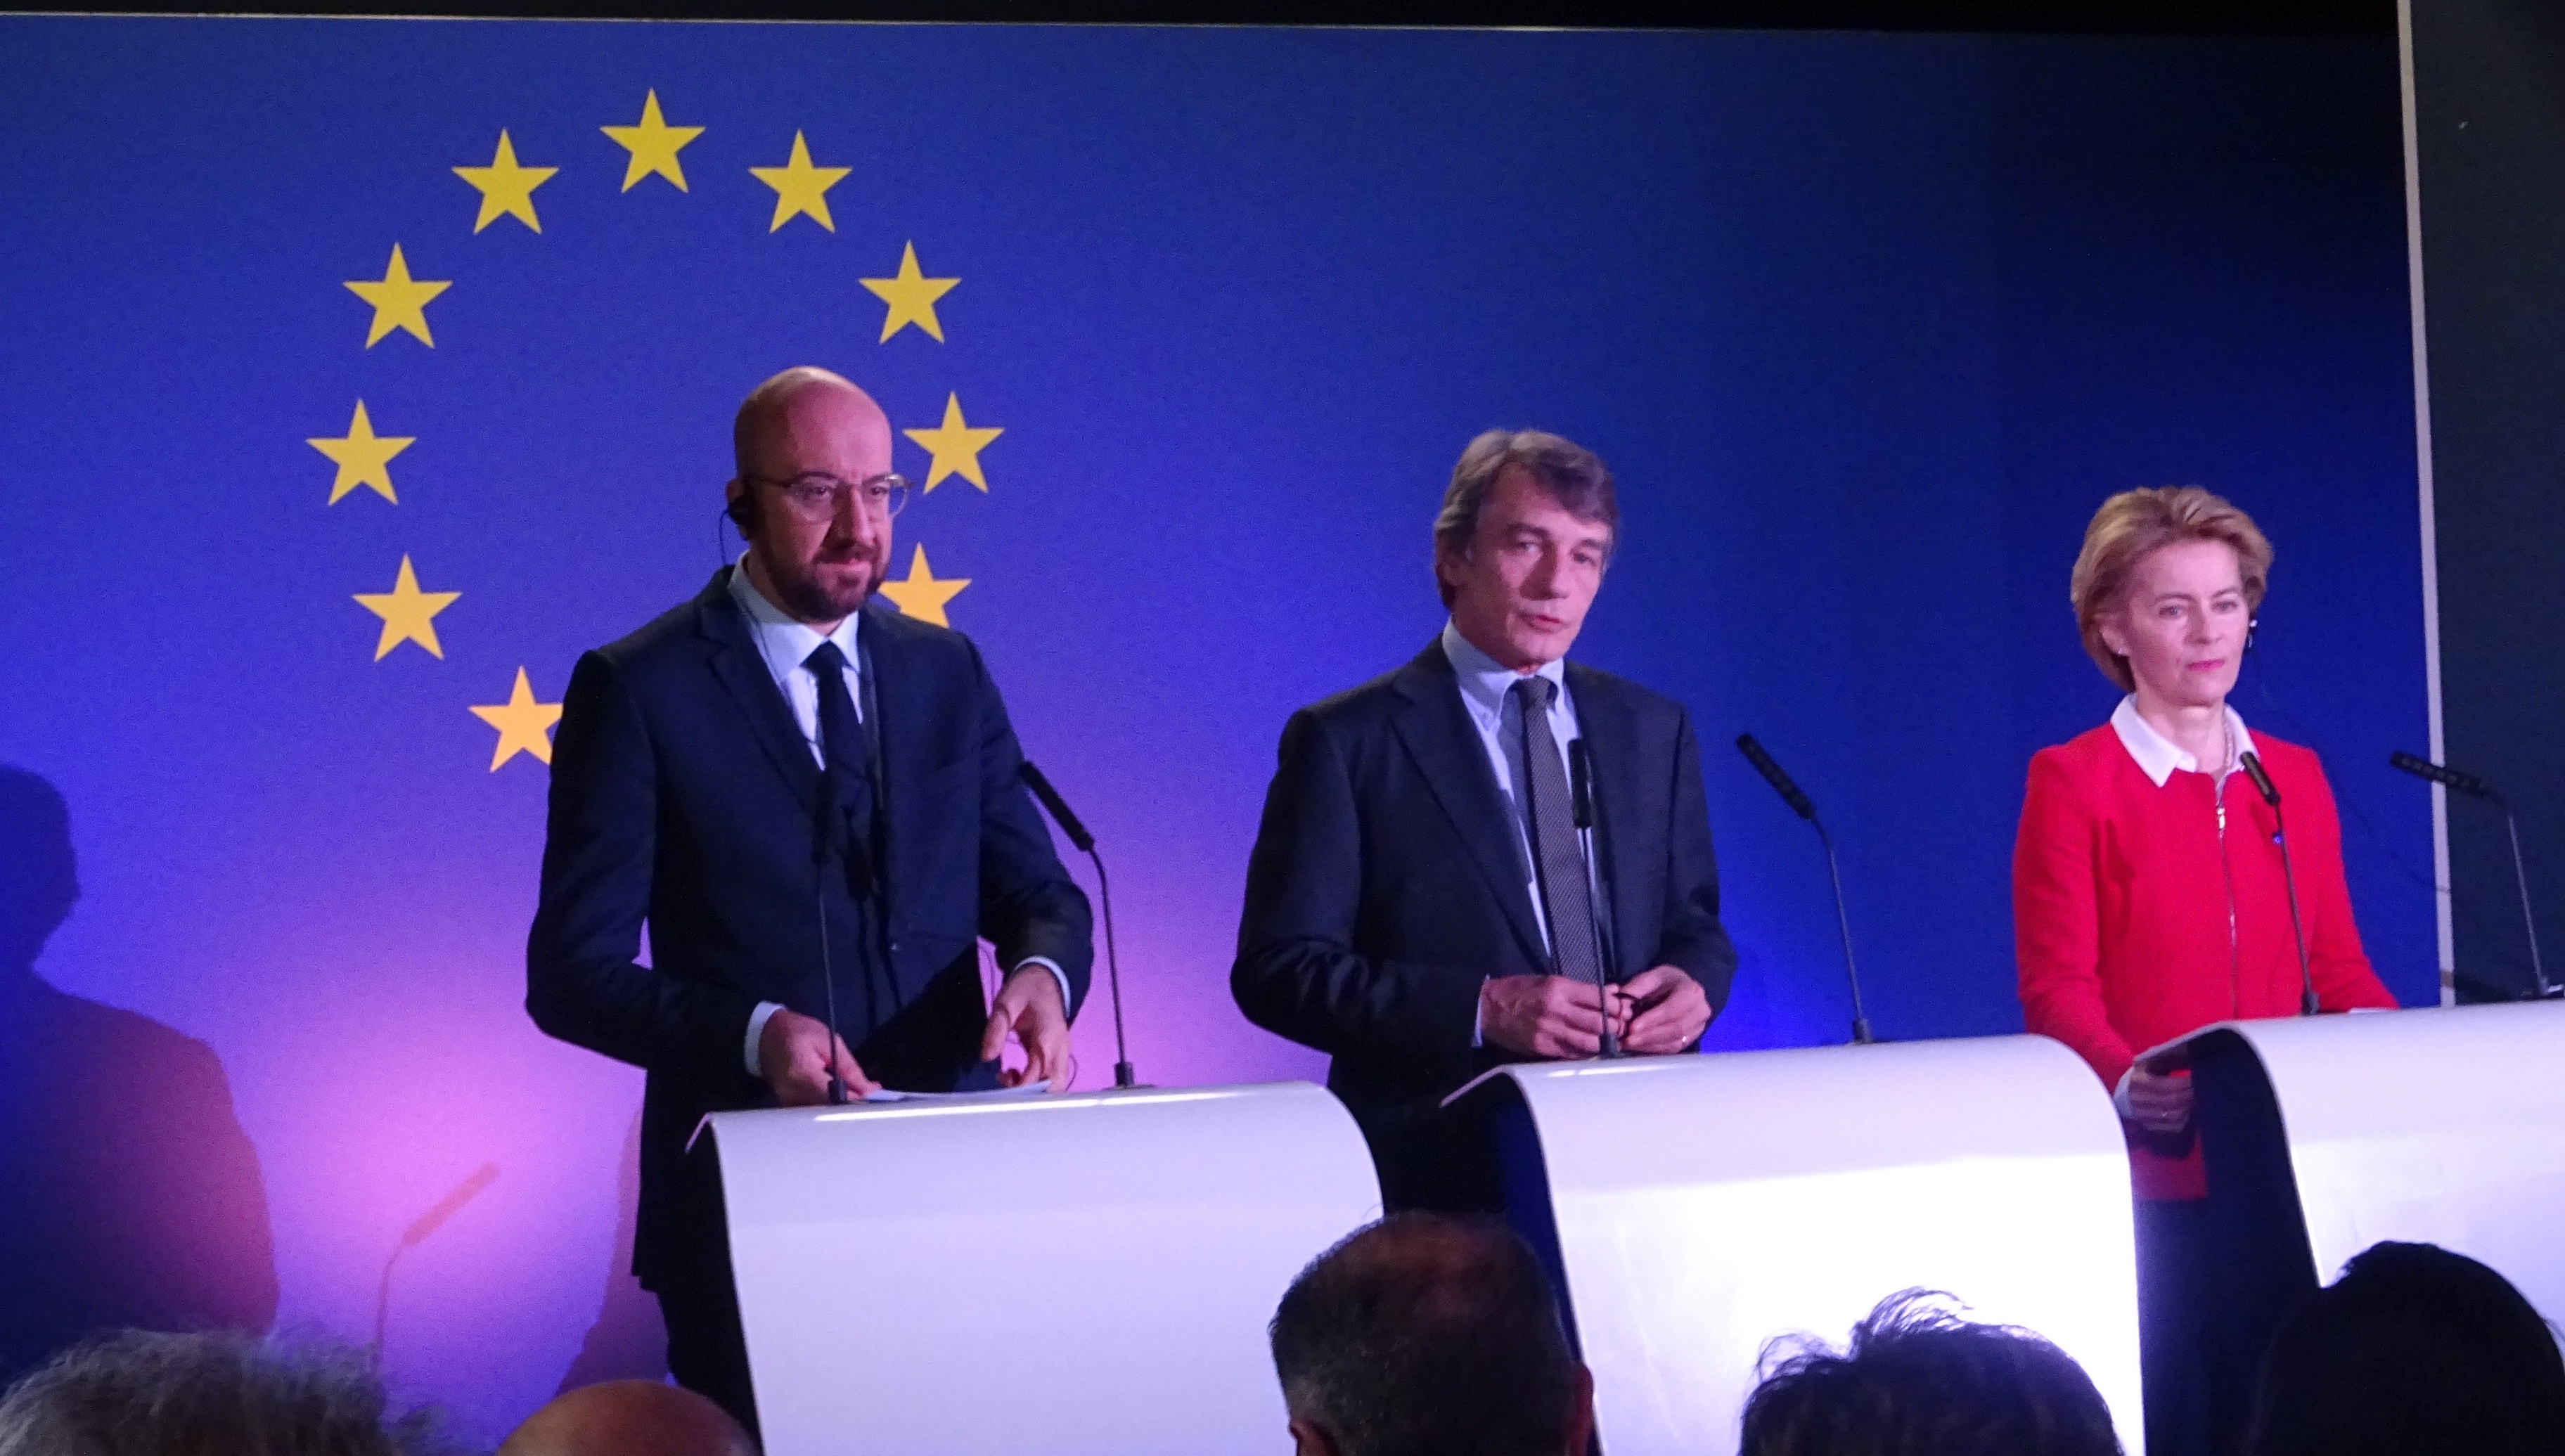 قادة الاتحاد الأوروبي الثلاثة يتحدثون في المؤتمر الصحفي المشترك